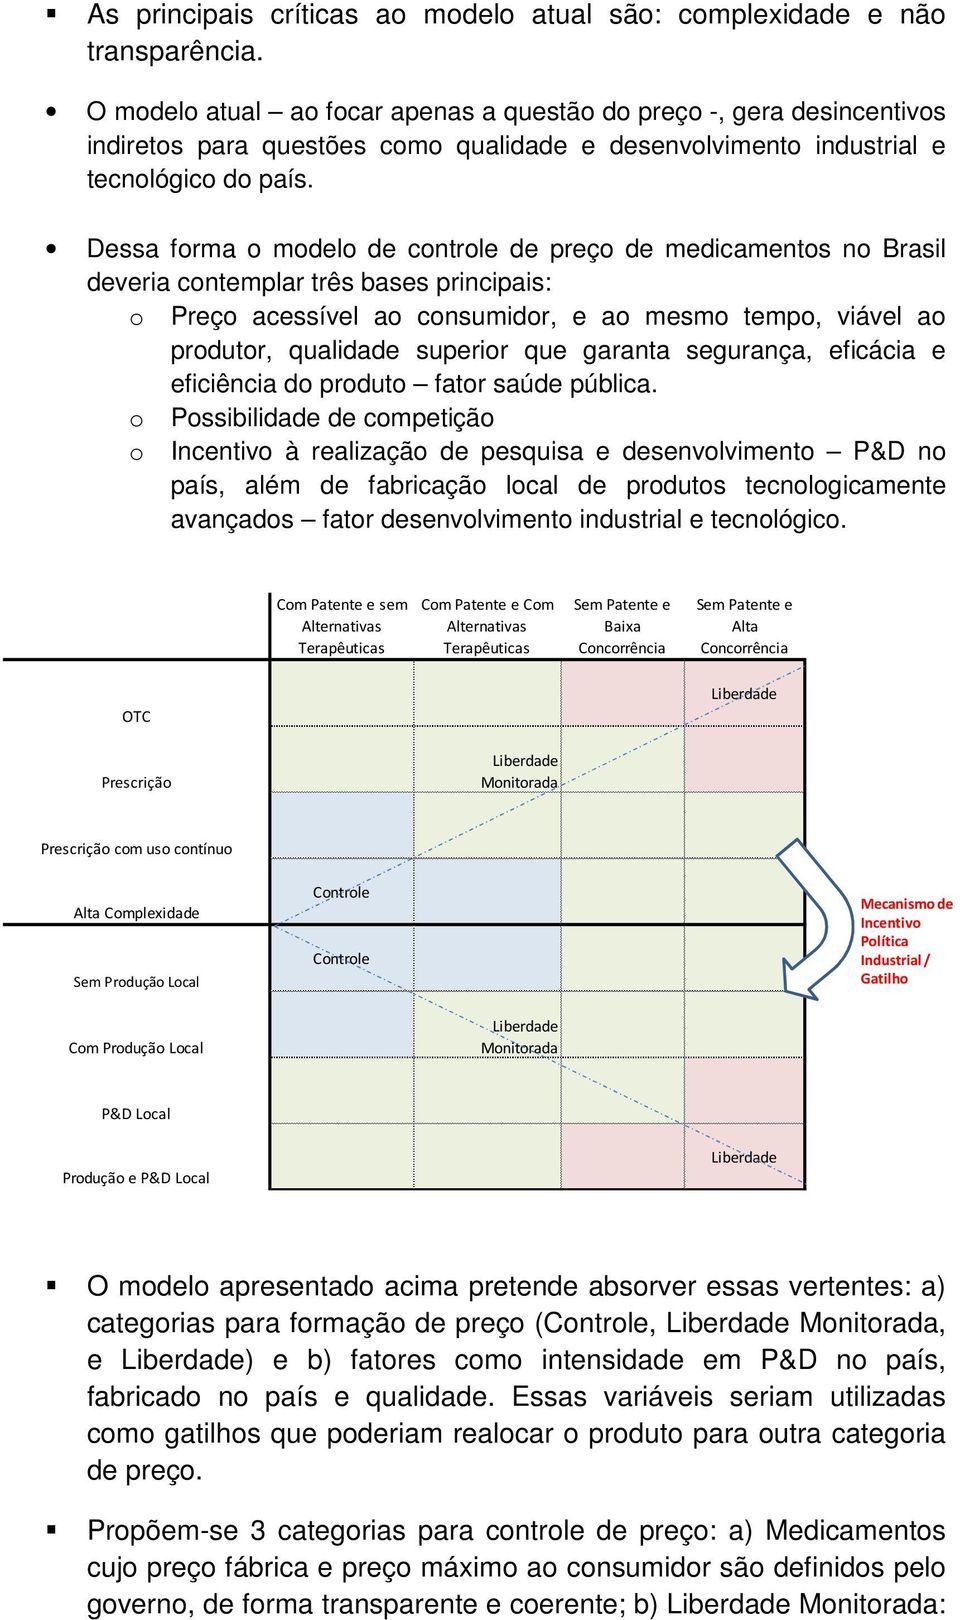 Dessa forma o modelo de controle de preço de medicamentos no Brasil deveria contemplar três bases principais: o Preço acessível ao consumidor, e ao mesmo tempo, viável ao produtor, qualidade superior